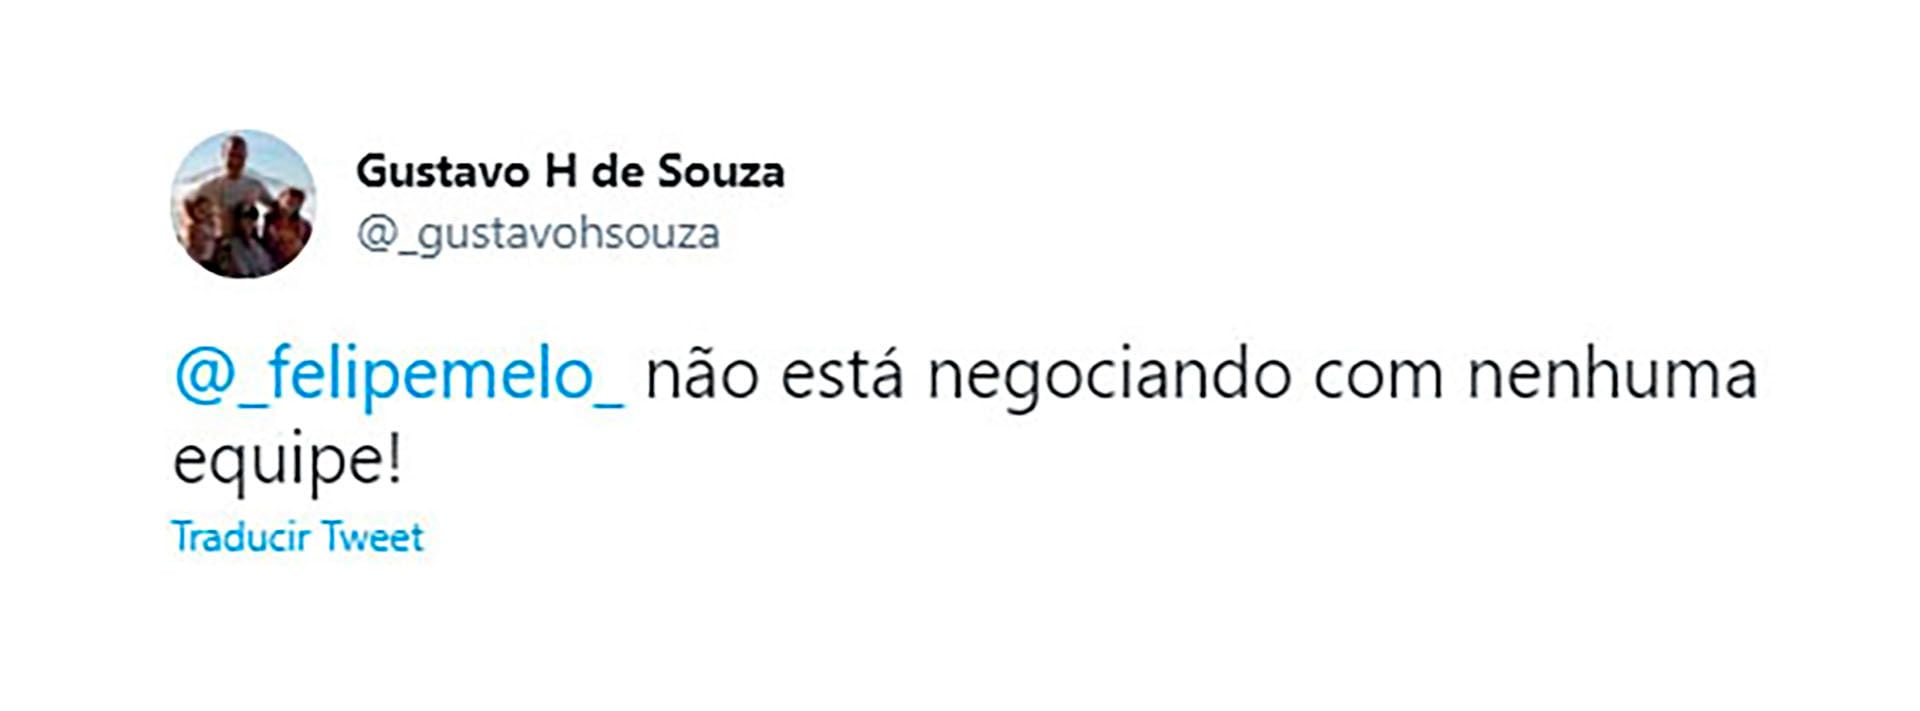 El mensaje que fue retuiteado por la cuenta oficial de Felipe Melo: "No está negociando con ningún equipo"